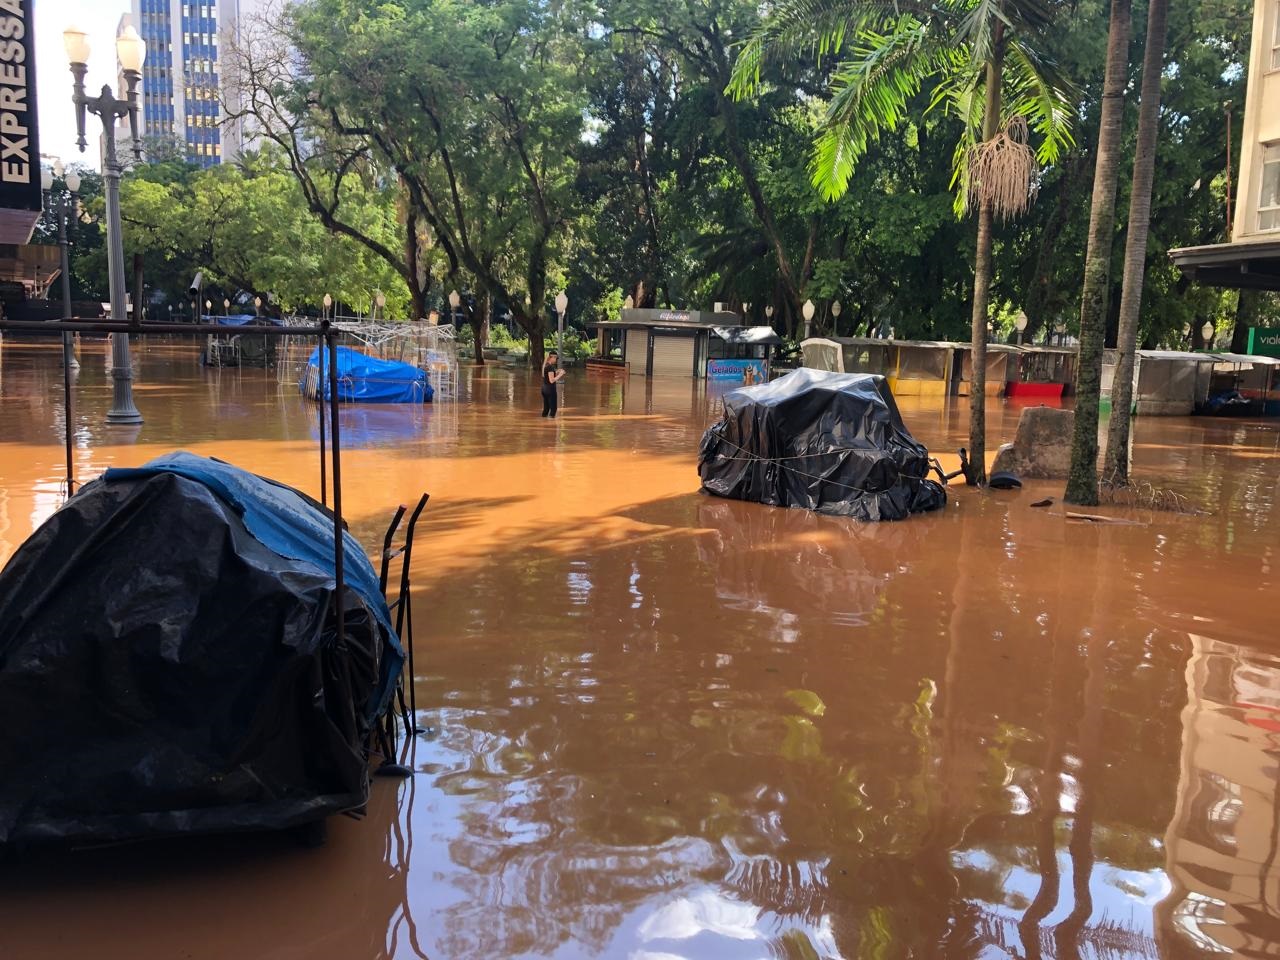 Em fotos do professor do IPH, eng. André Silveira, cenário de alagamento de Porto Alegre em 5 de maio, durante as enchentes que tomaram o Rio Grande do Sul em cenário de eventos climáticos extremos analisado pelo pesquisador ao lado de colegas de outras regiões do país